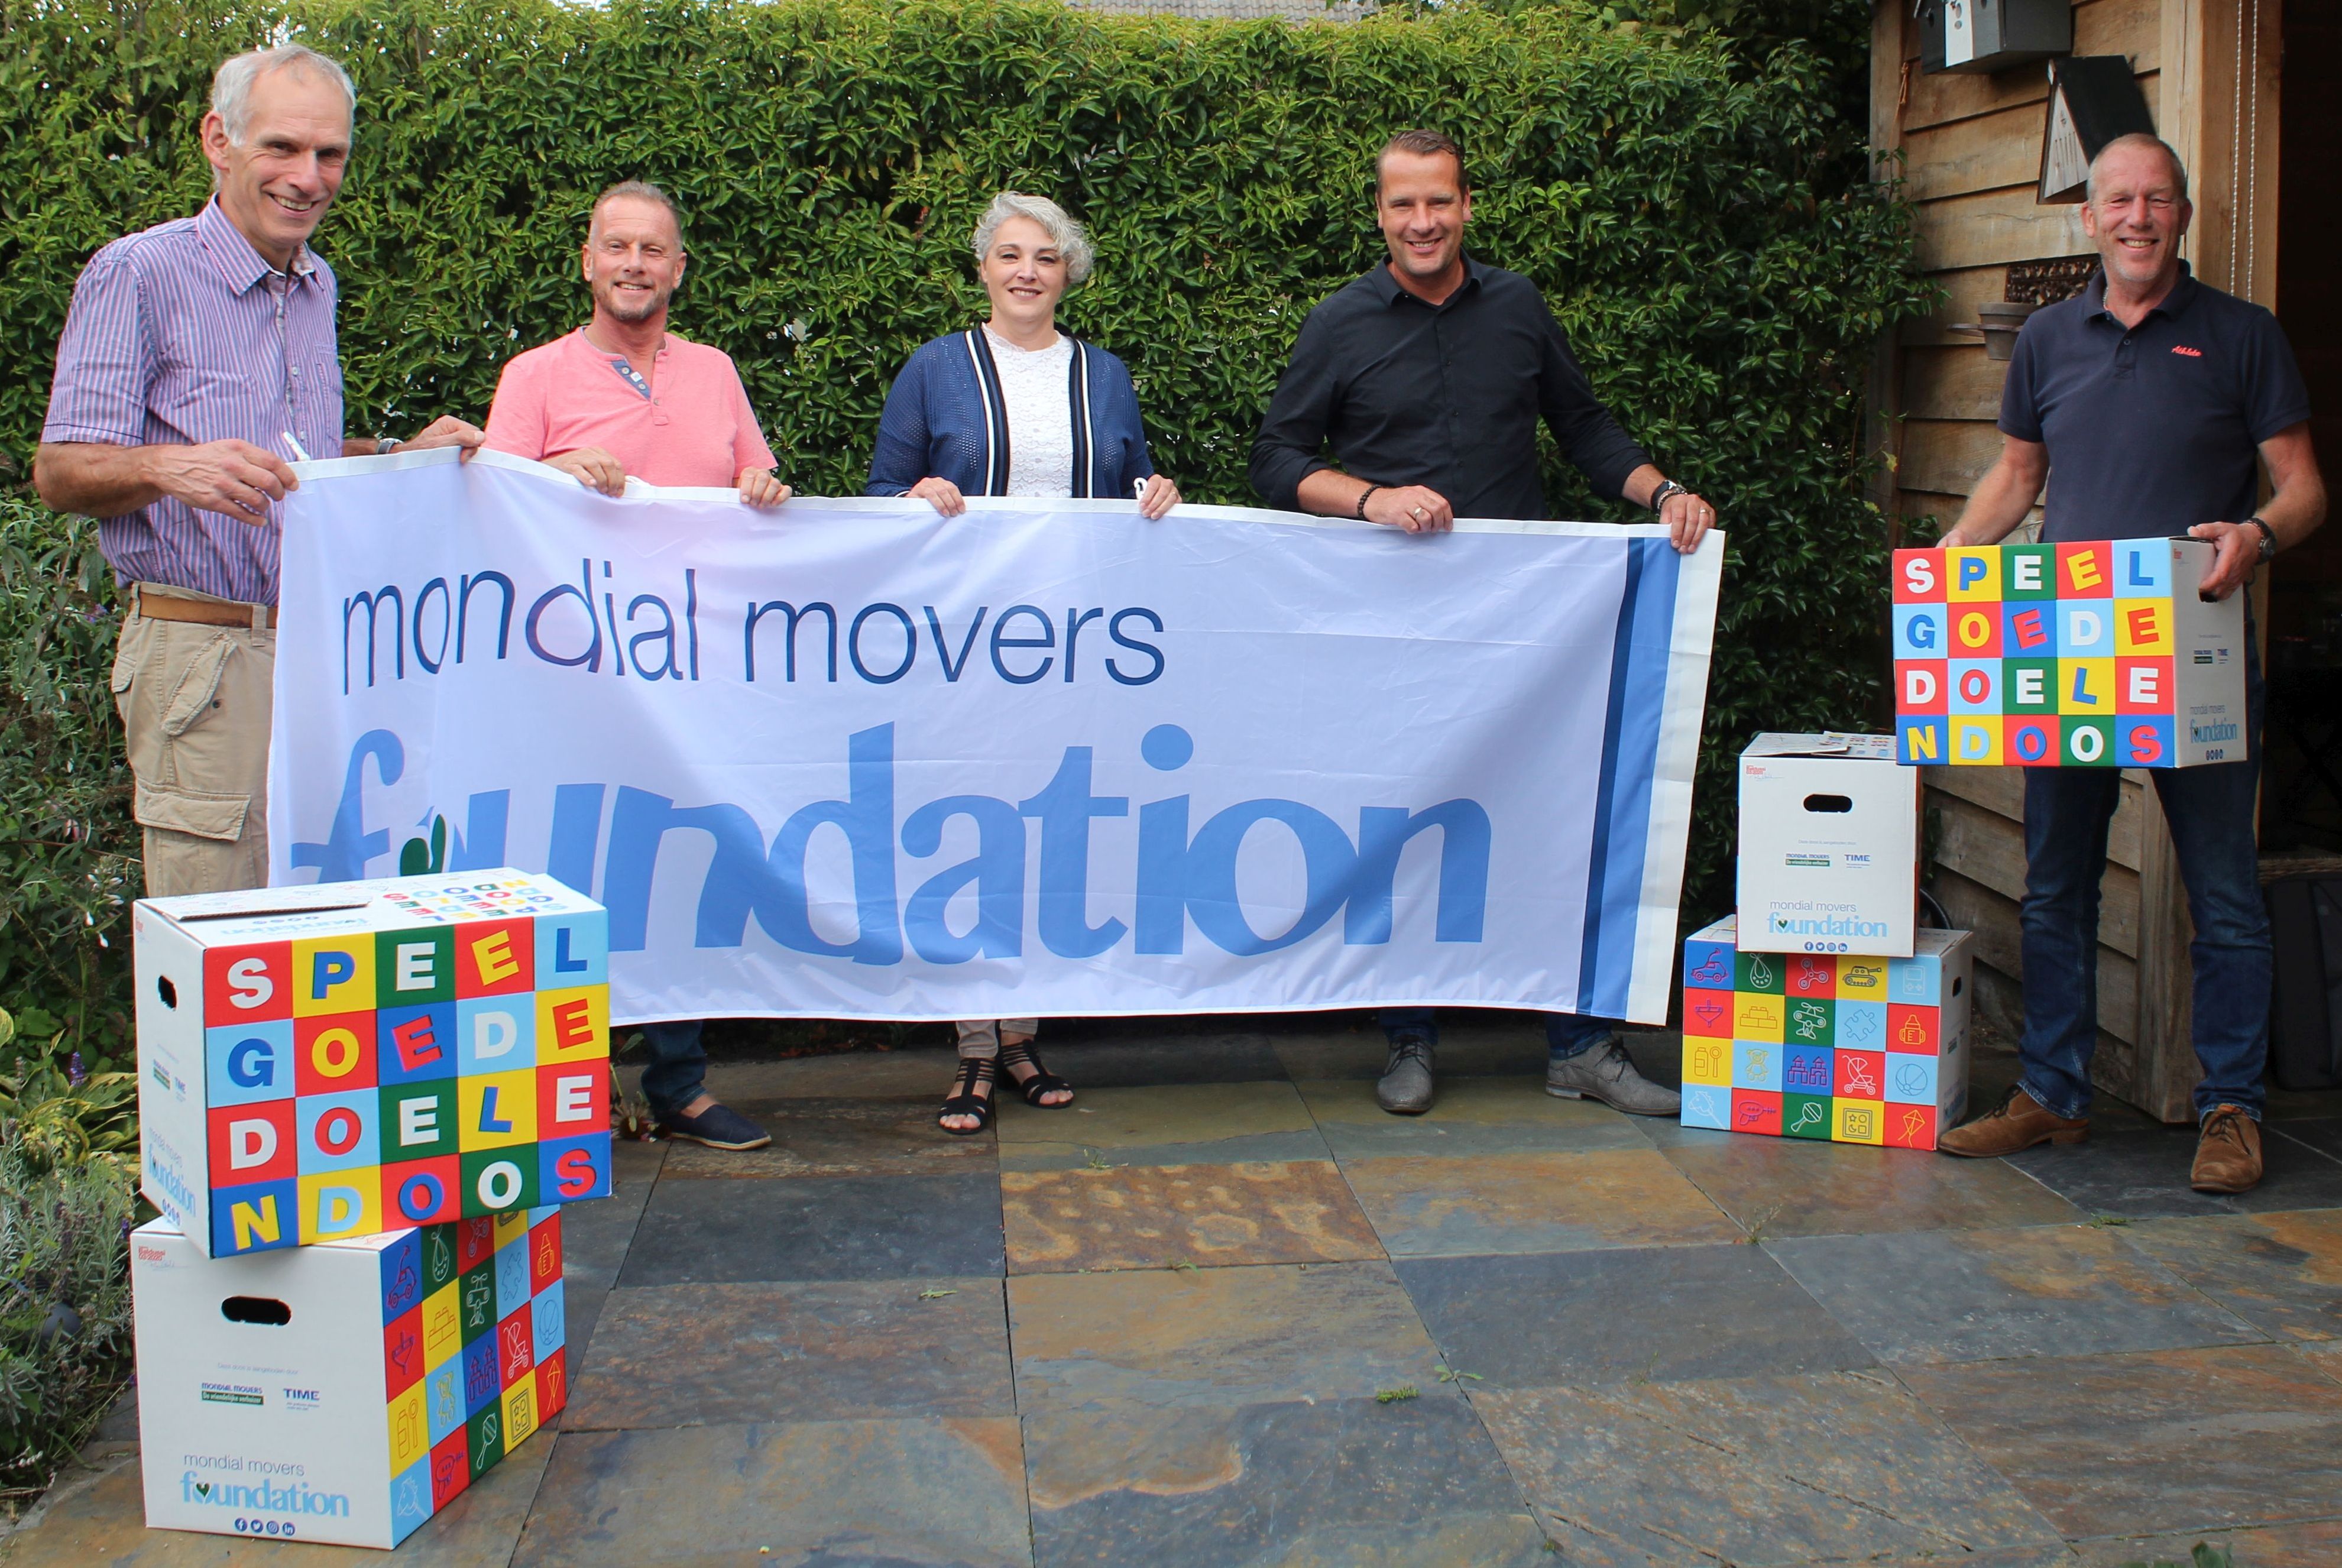 Speelgoededoelendoos Mondial Movers Foundation